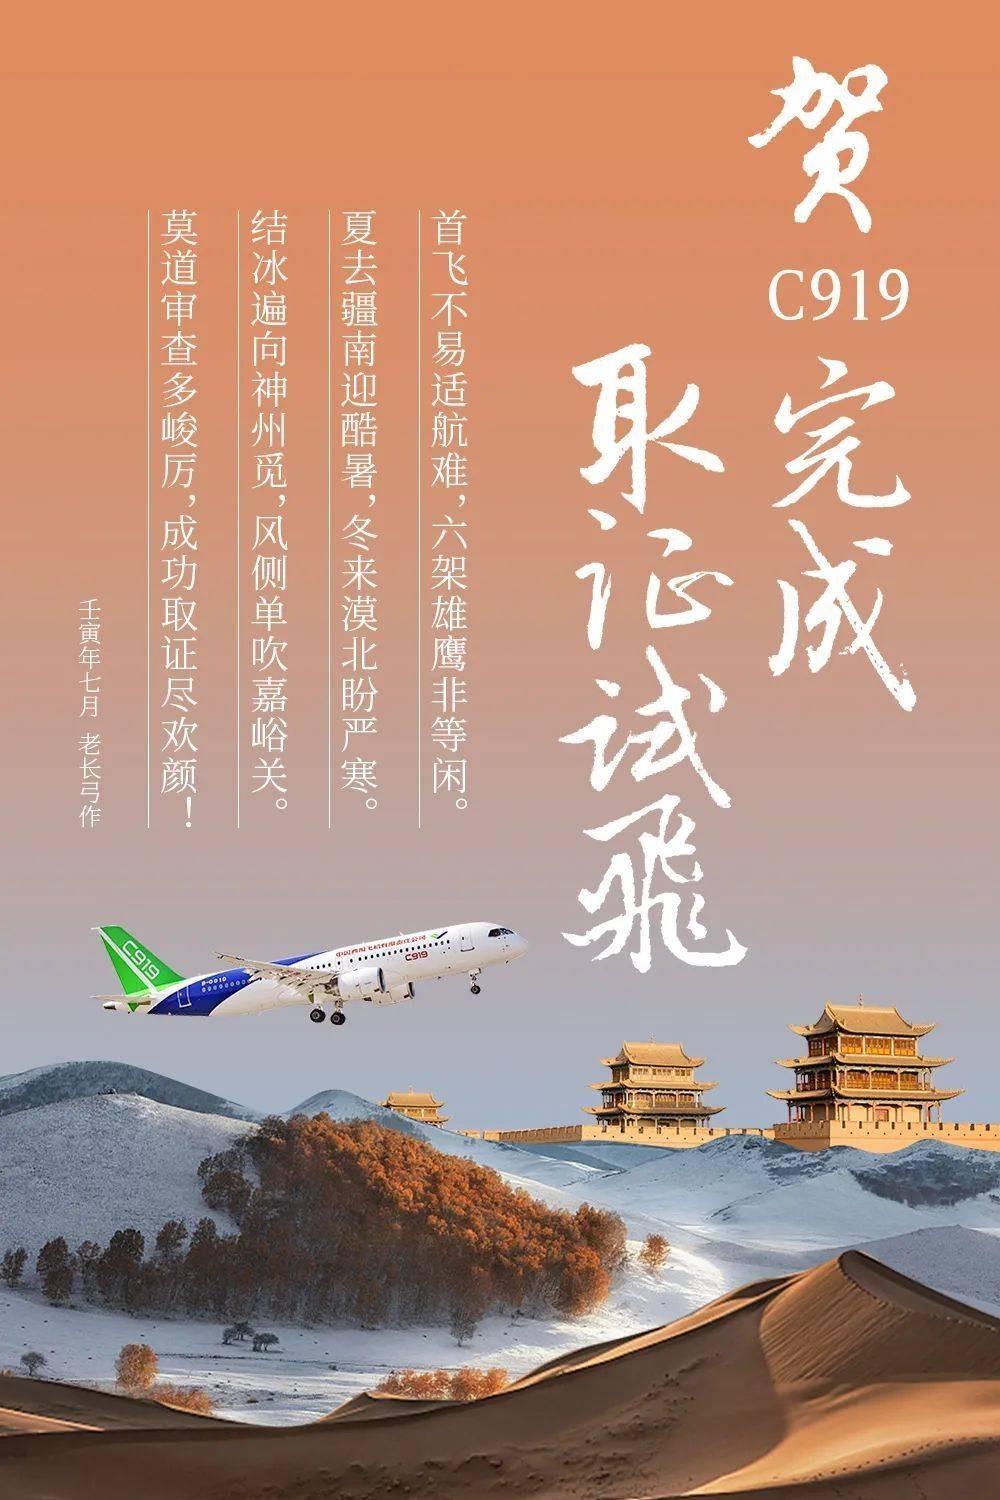 中国商飞宣布C919完成取证试飞